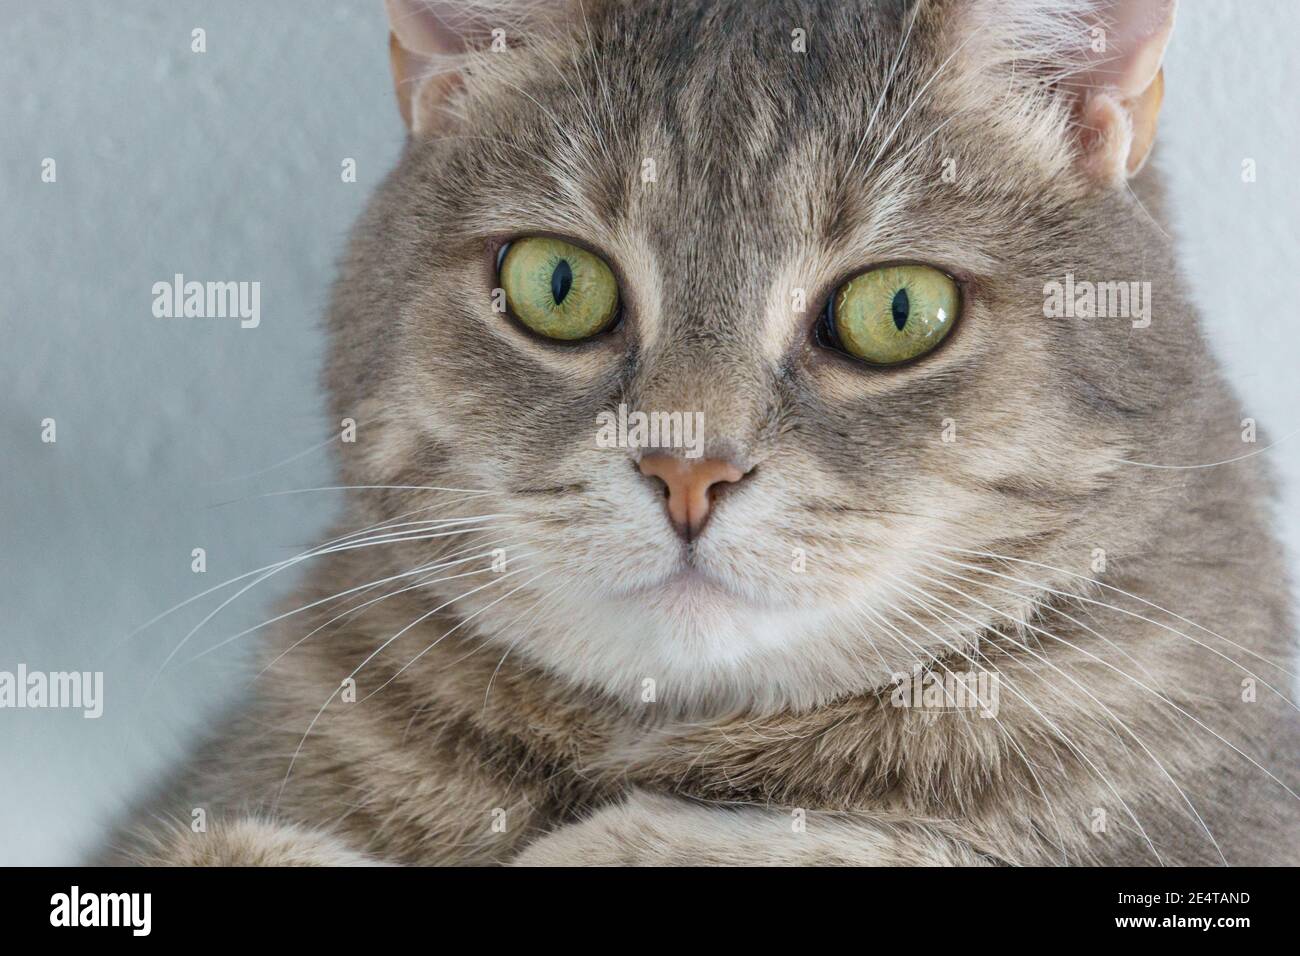 ritratto di gatti a faccia da vicino con occhi curiosi Foto Stock